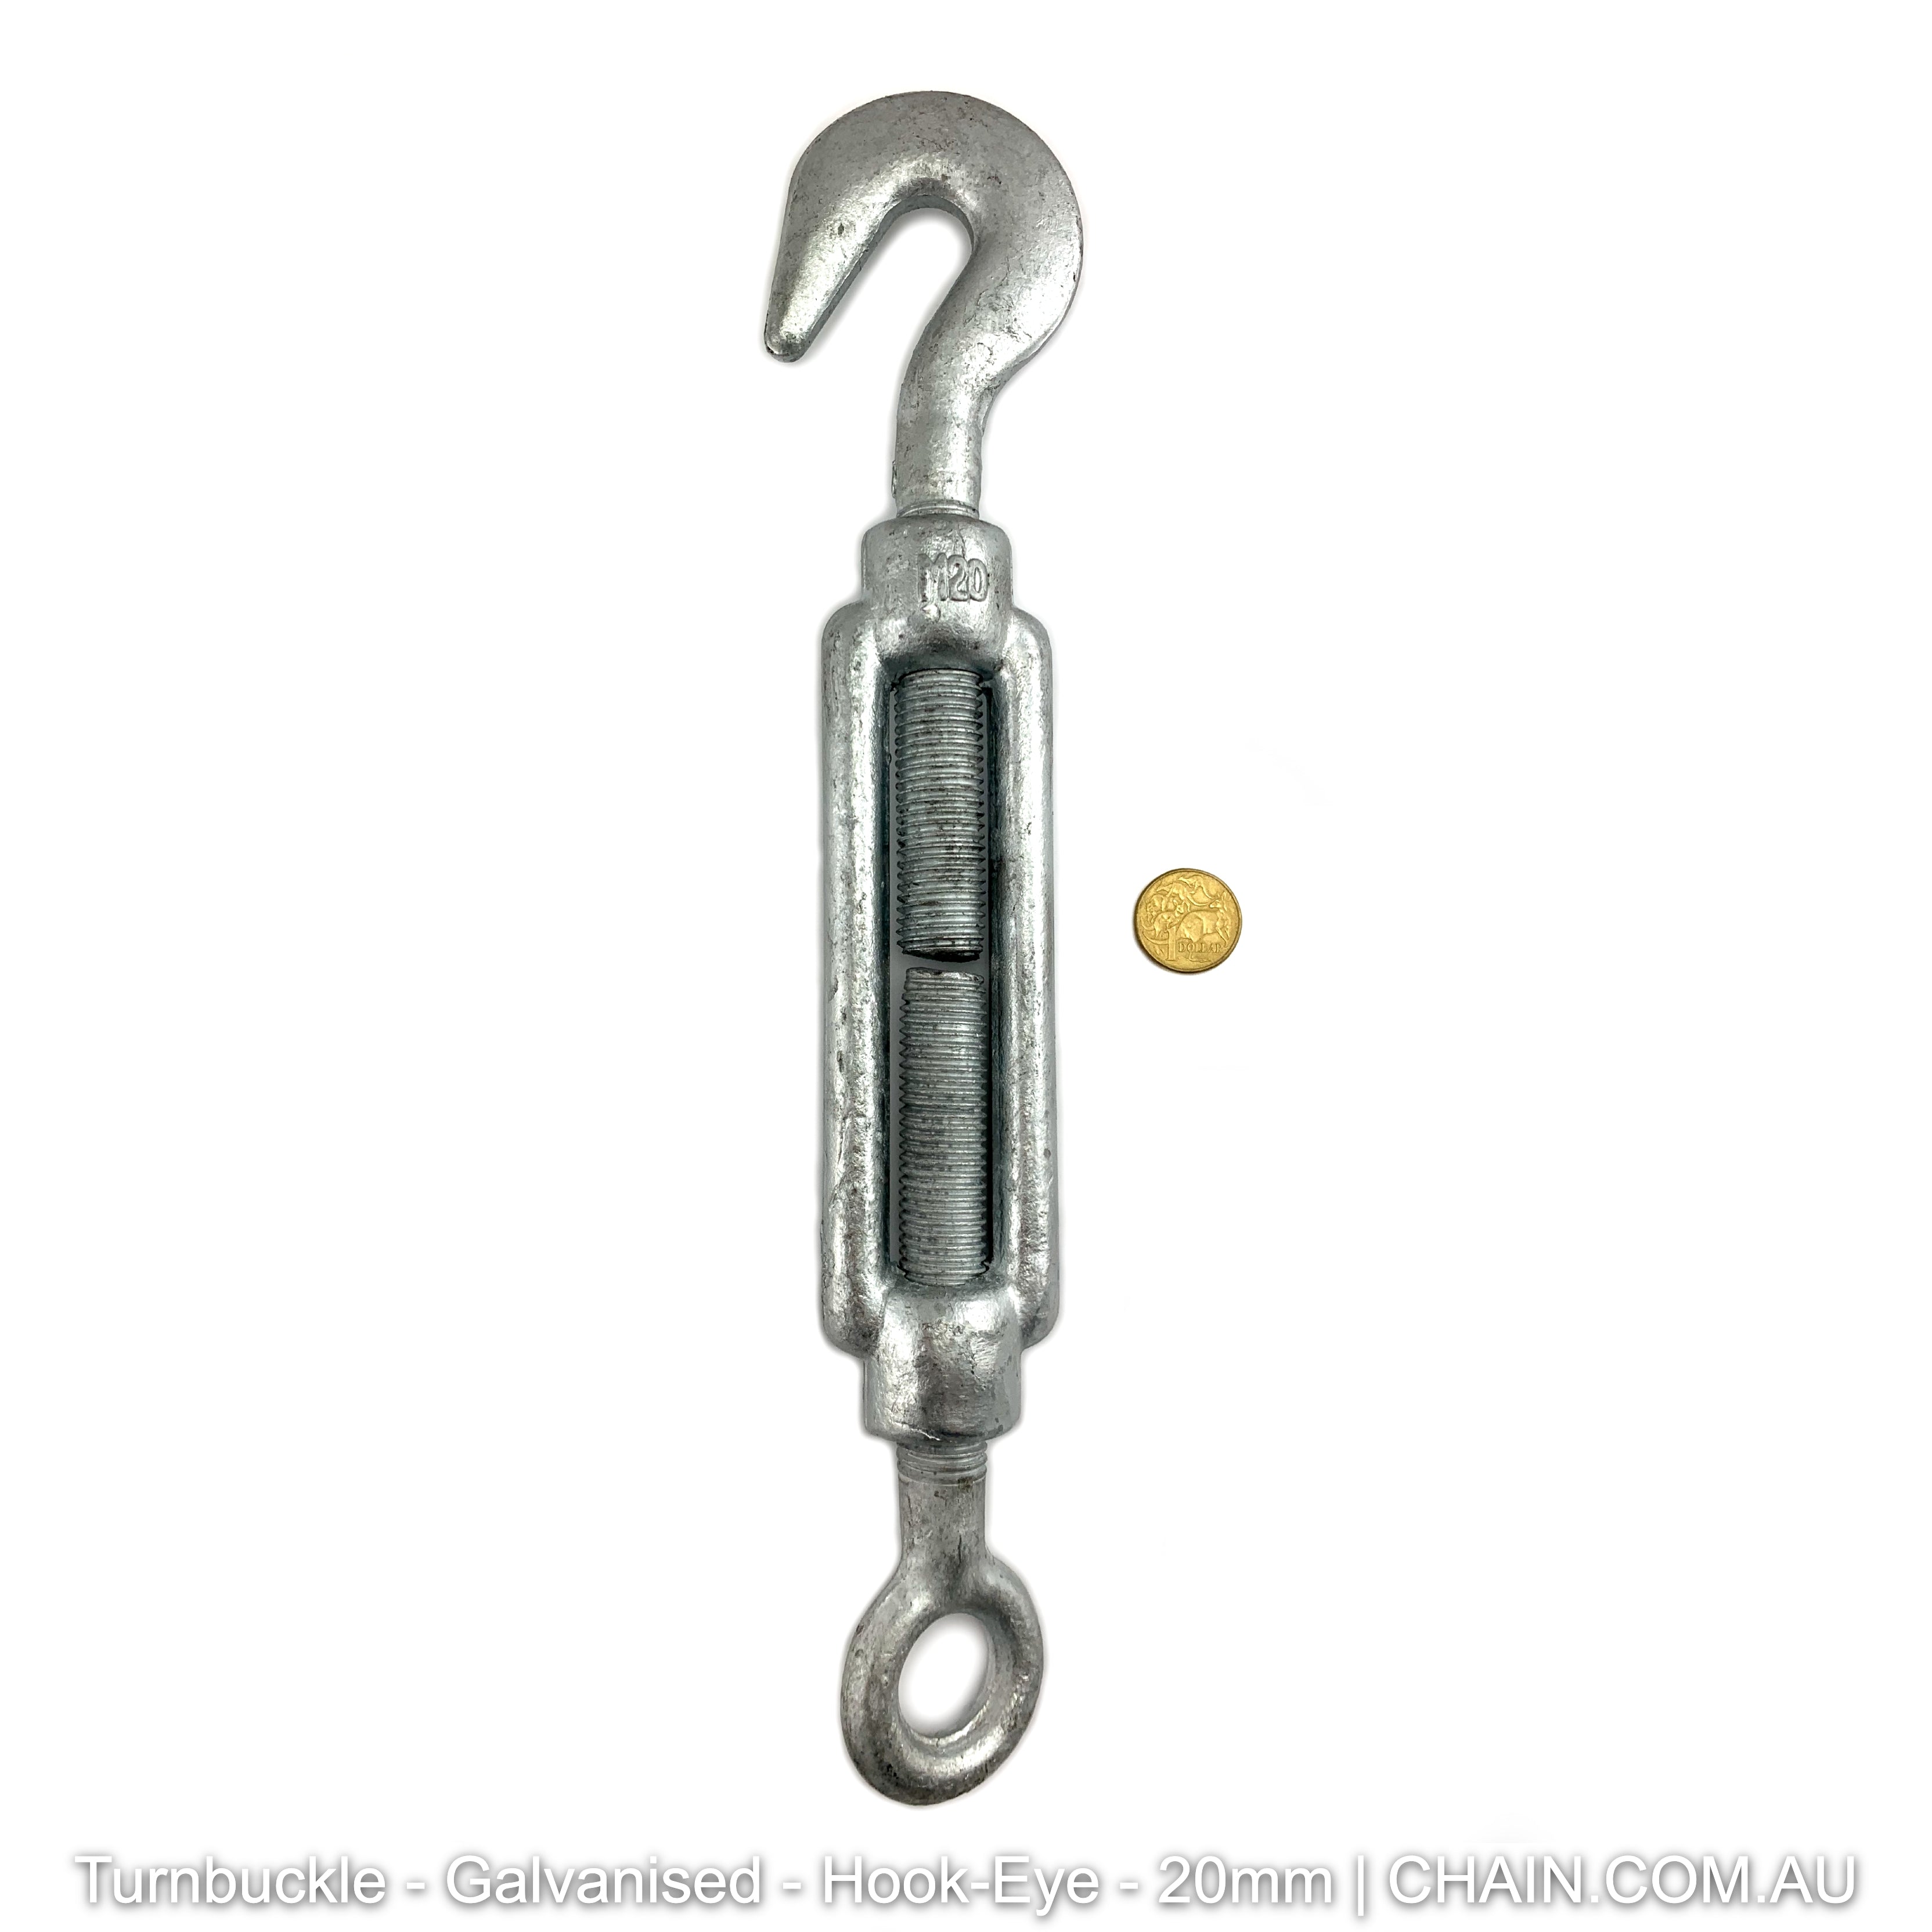 Turnbuckles - Galvanised - Hook-Eye - 20mm. Australia